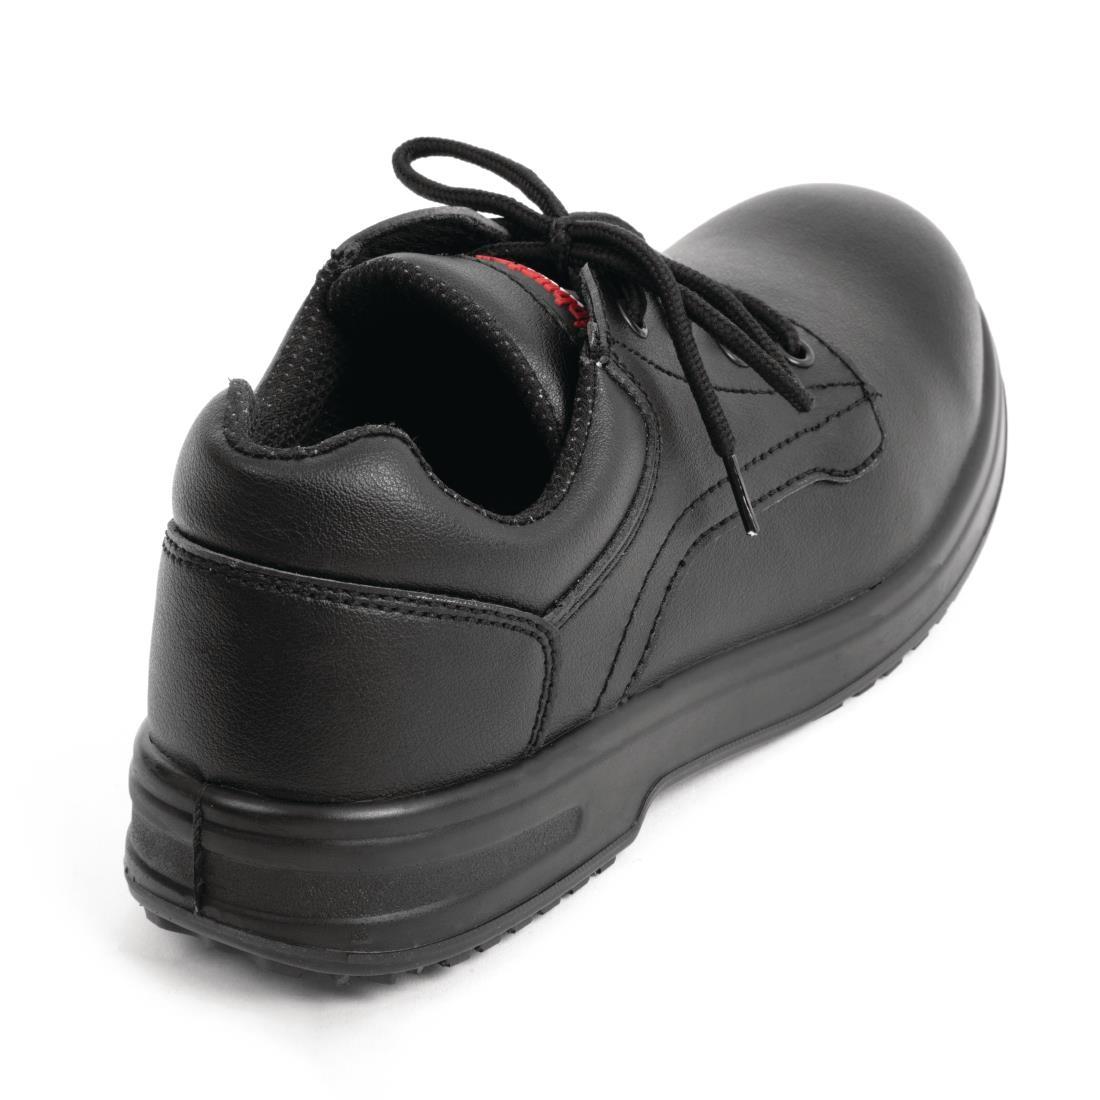 Slipbuster Basic Toe Cap Safety Shoes Black 44 - BB497-44  - 3